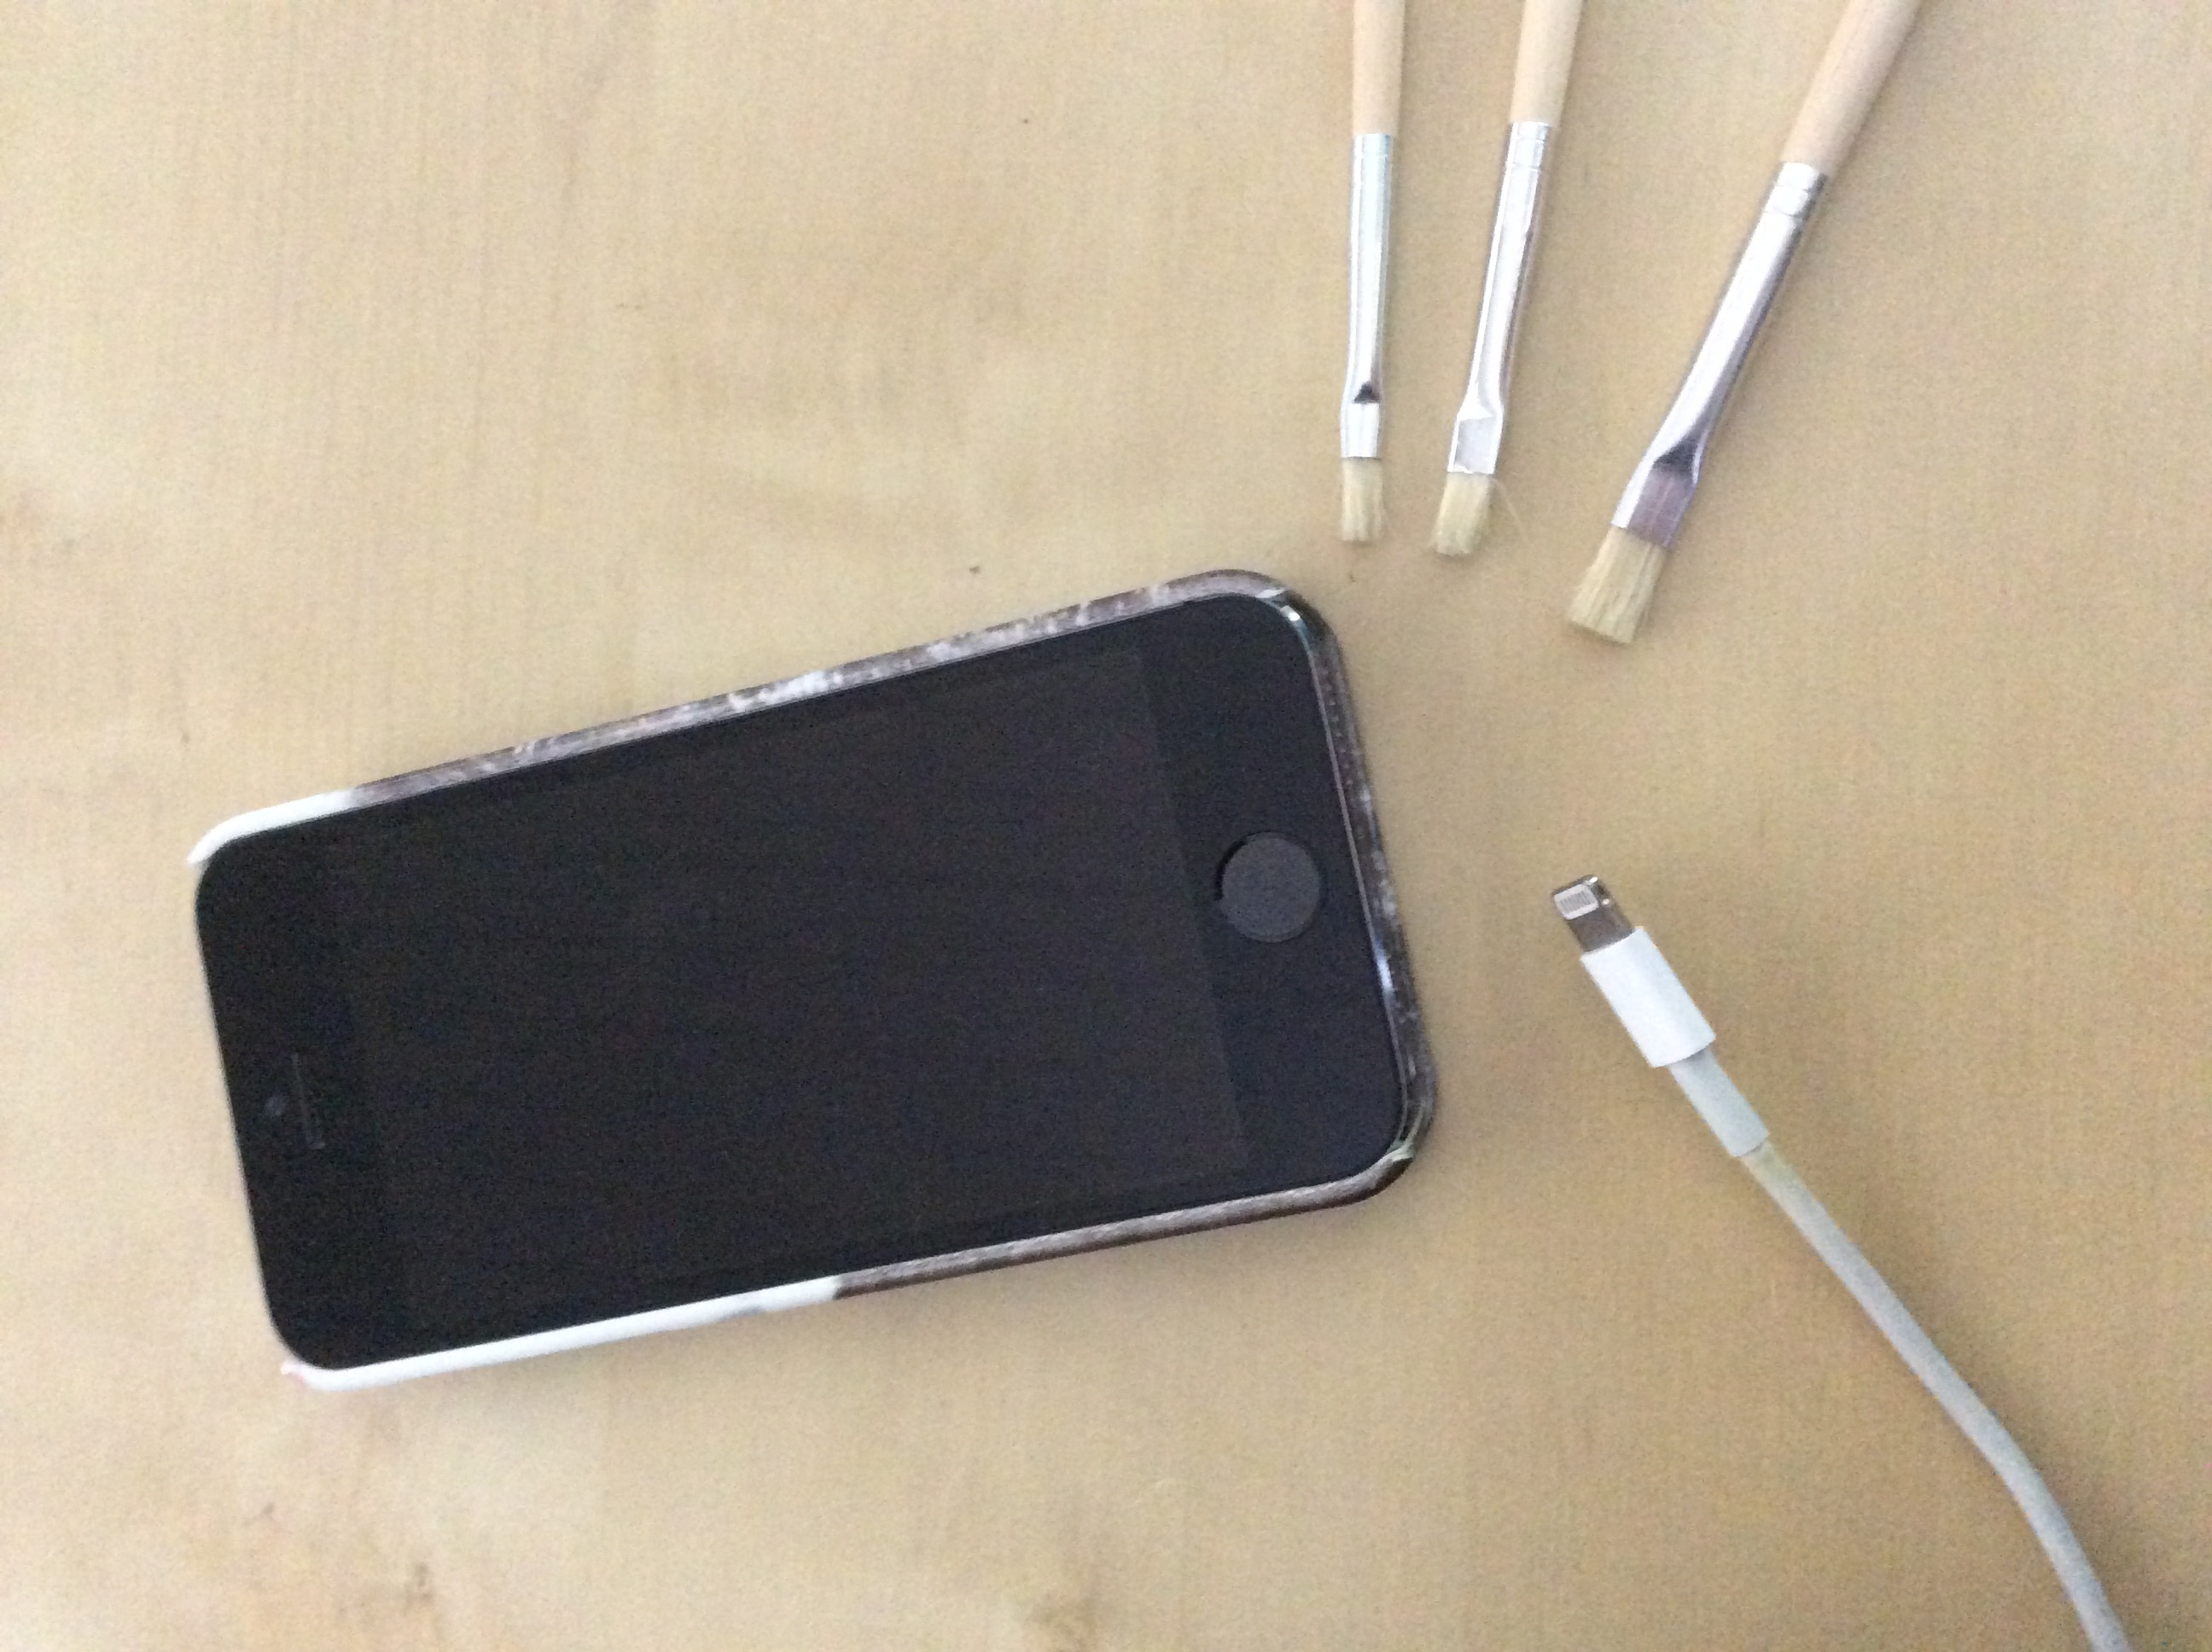 Stellen Sie sicher, dass das Kabel und der Anschluss des iPhones nicht beschädigt oder schmutzig sind. Reinigen Sie den Anschluss vorsichtig mit einem trockenen Tuch.
Verwenden Sie ein Originalkabel von Apple.